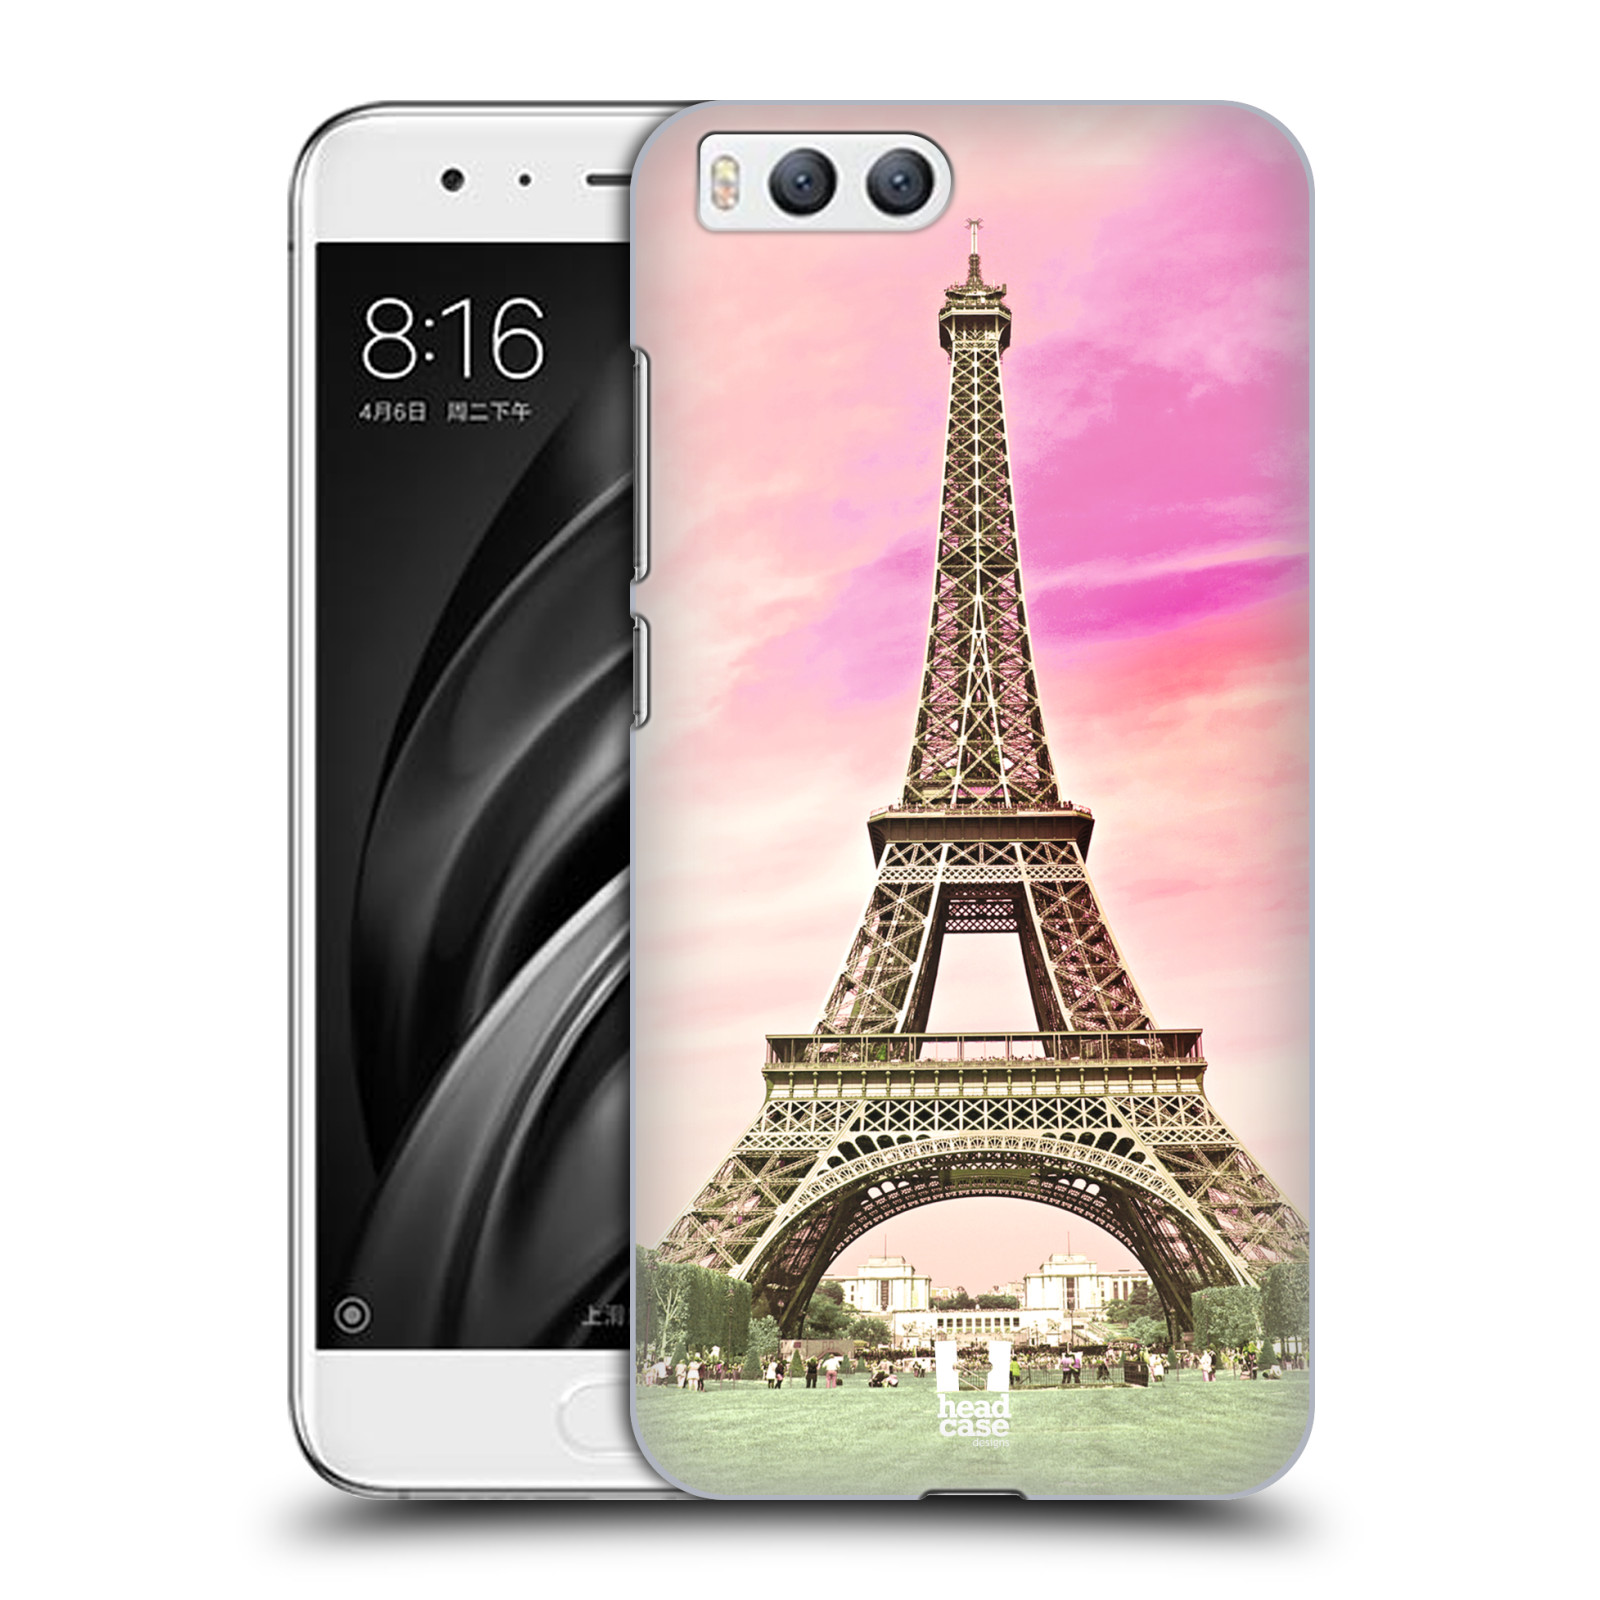 Pouzdro na mobil Xiaomi MI6 - HEAD CASE - historická místa Eiffelova věž Paříž